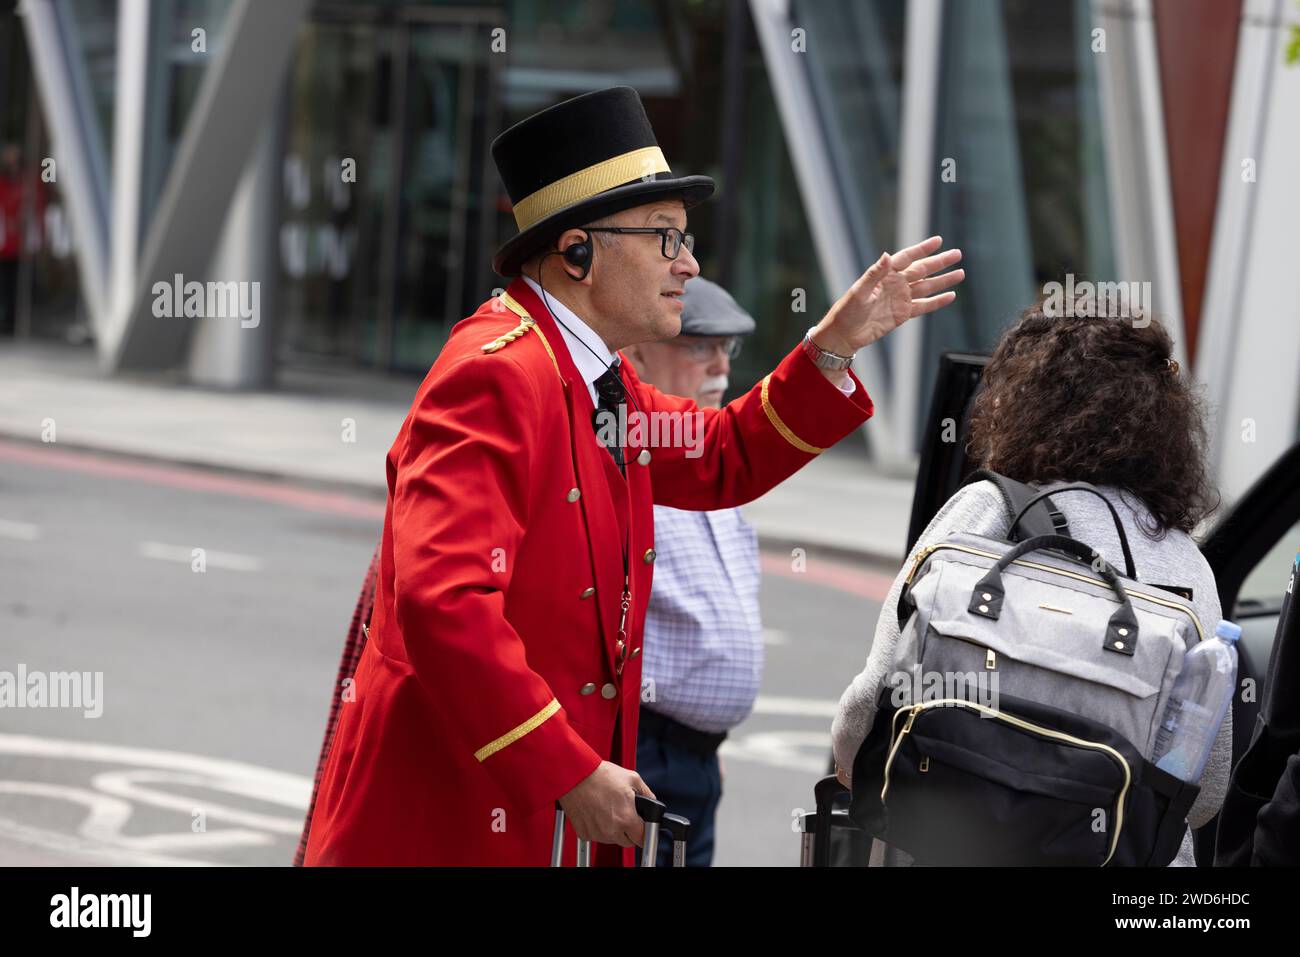 Un concierge vestito in elegante uniforme rossa tradizionale all'esterno del Rubens Hotel a Victoria, nel centro di Londra. Sta aiutando un passeggero a salire su un taxi nero Foto Stock